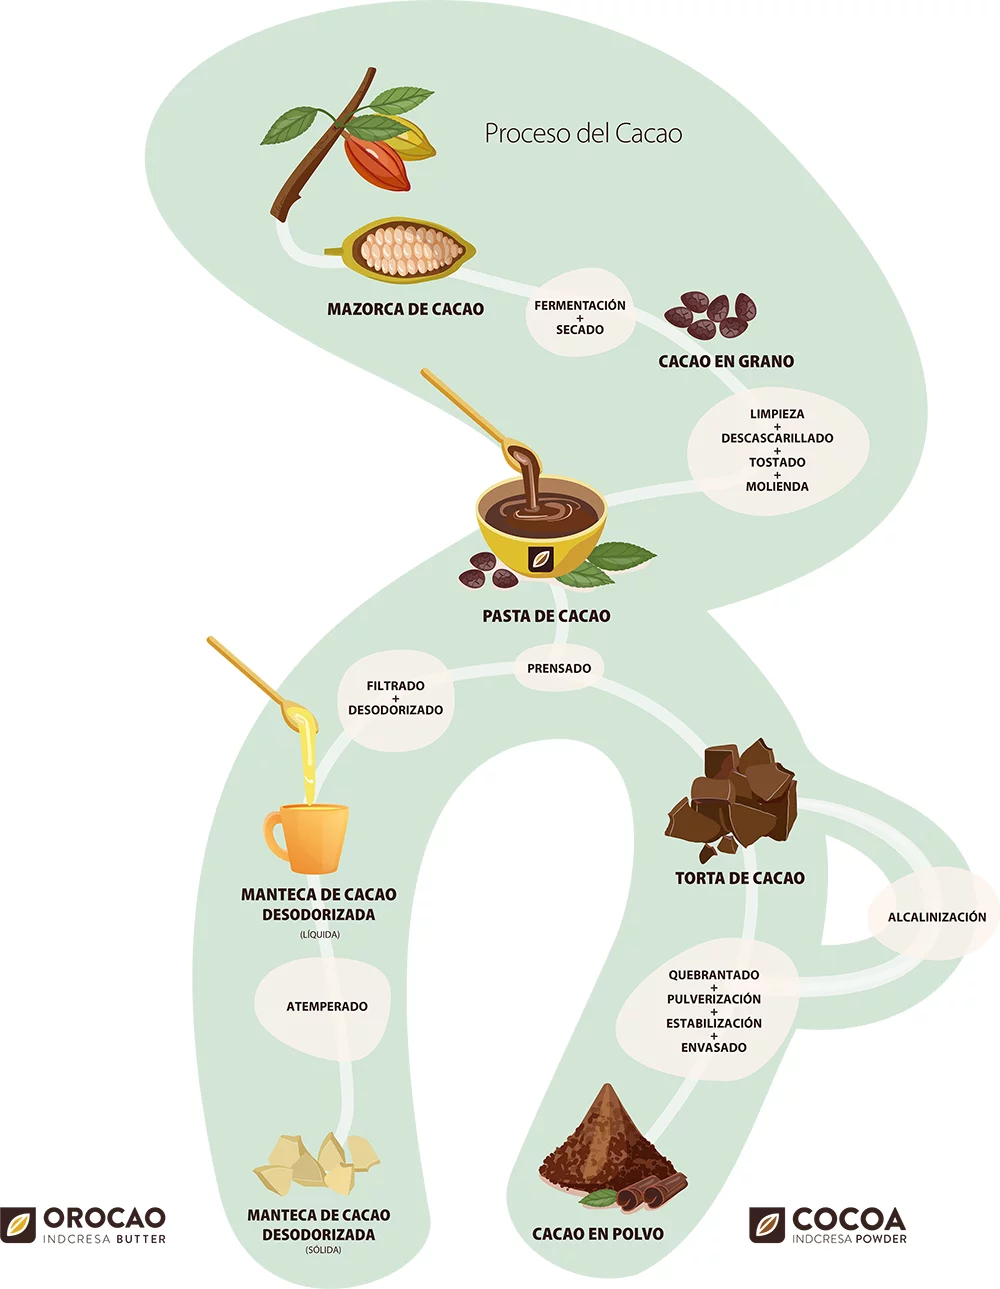 El proceso del cacao